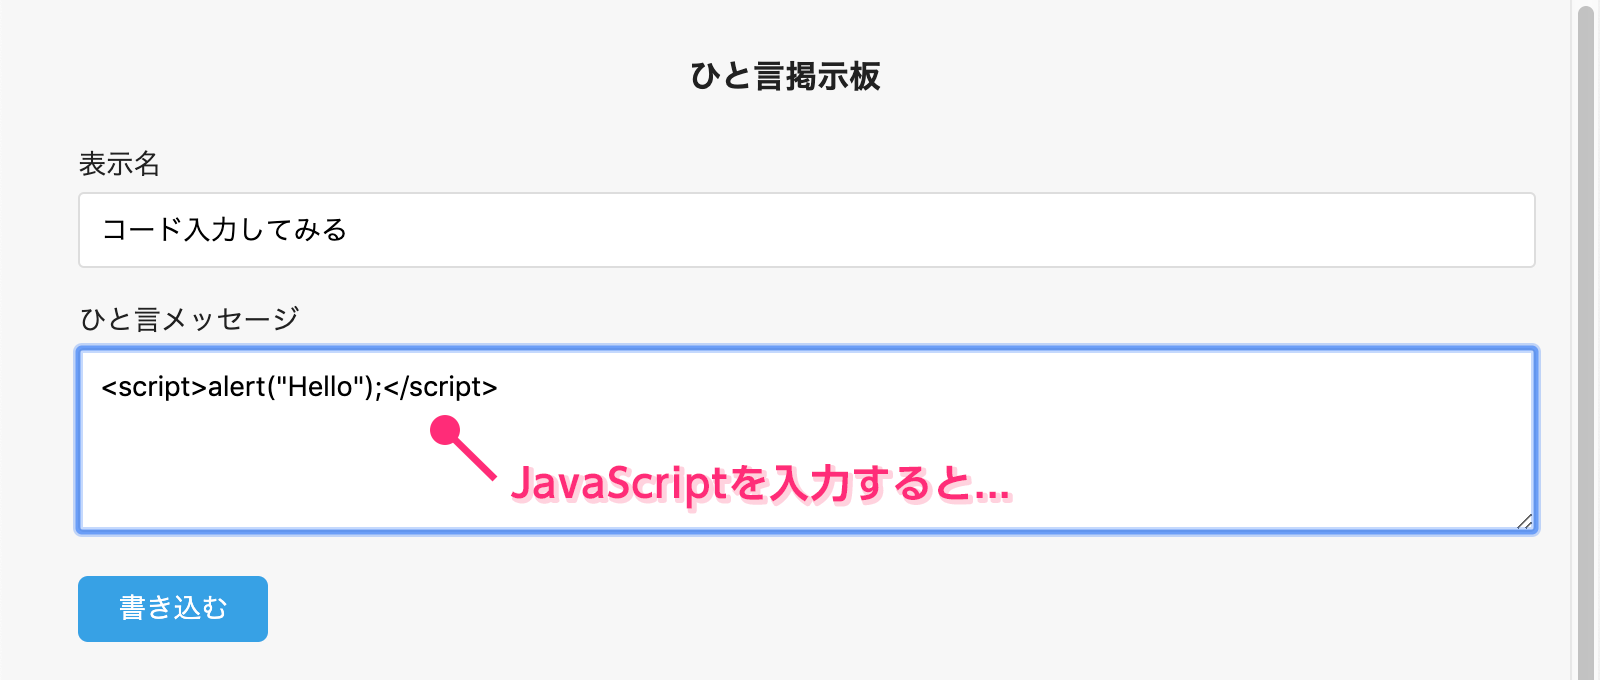 JavaScritpコードを入力する